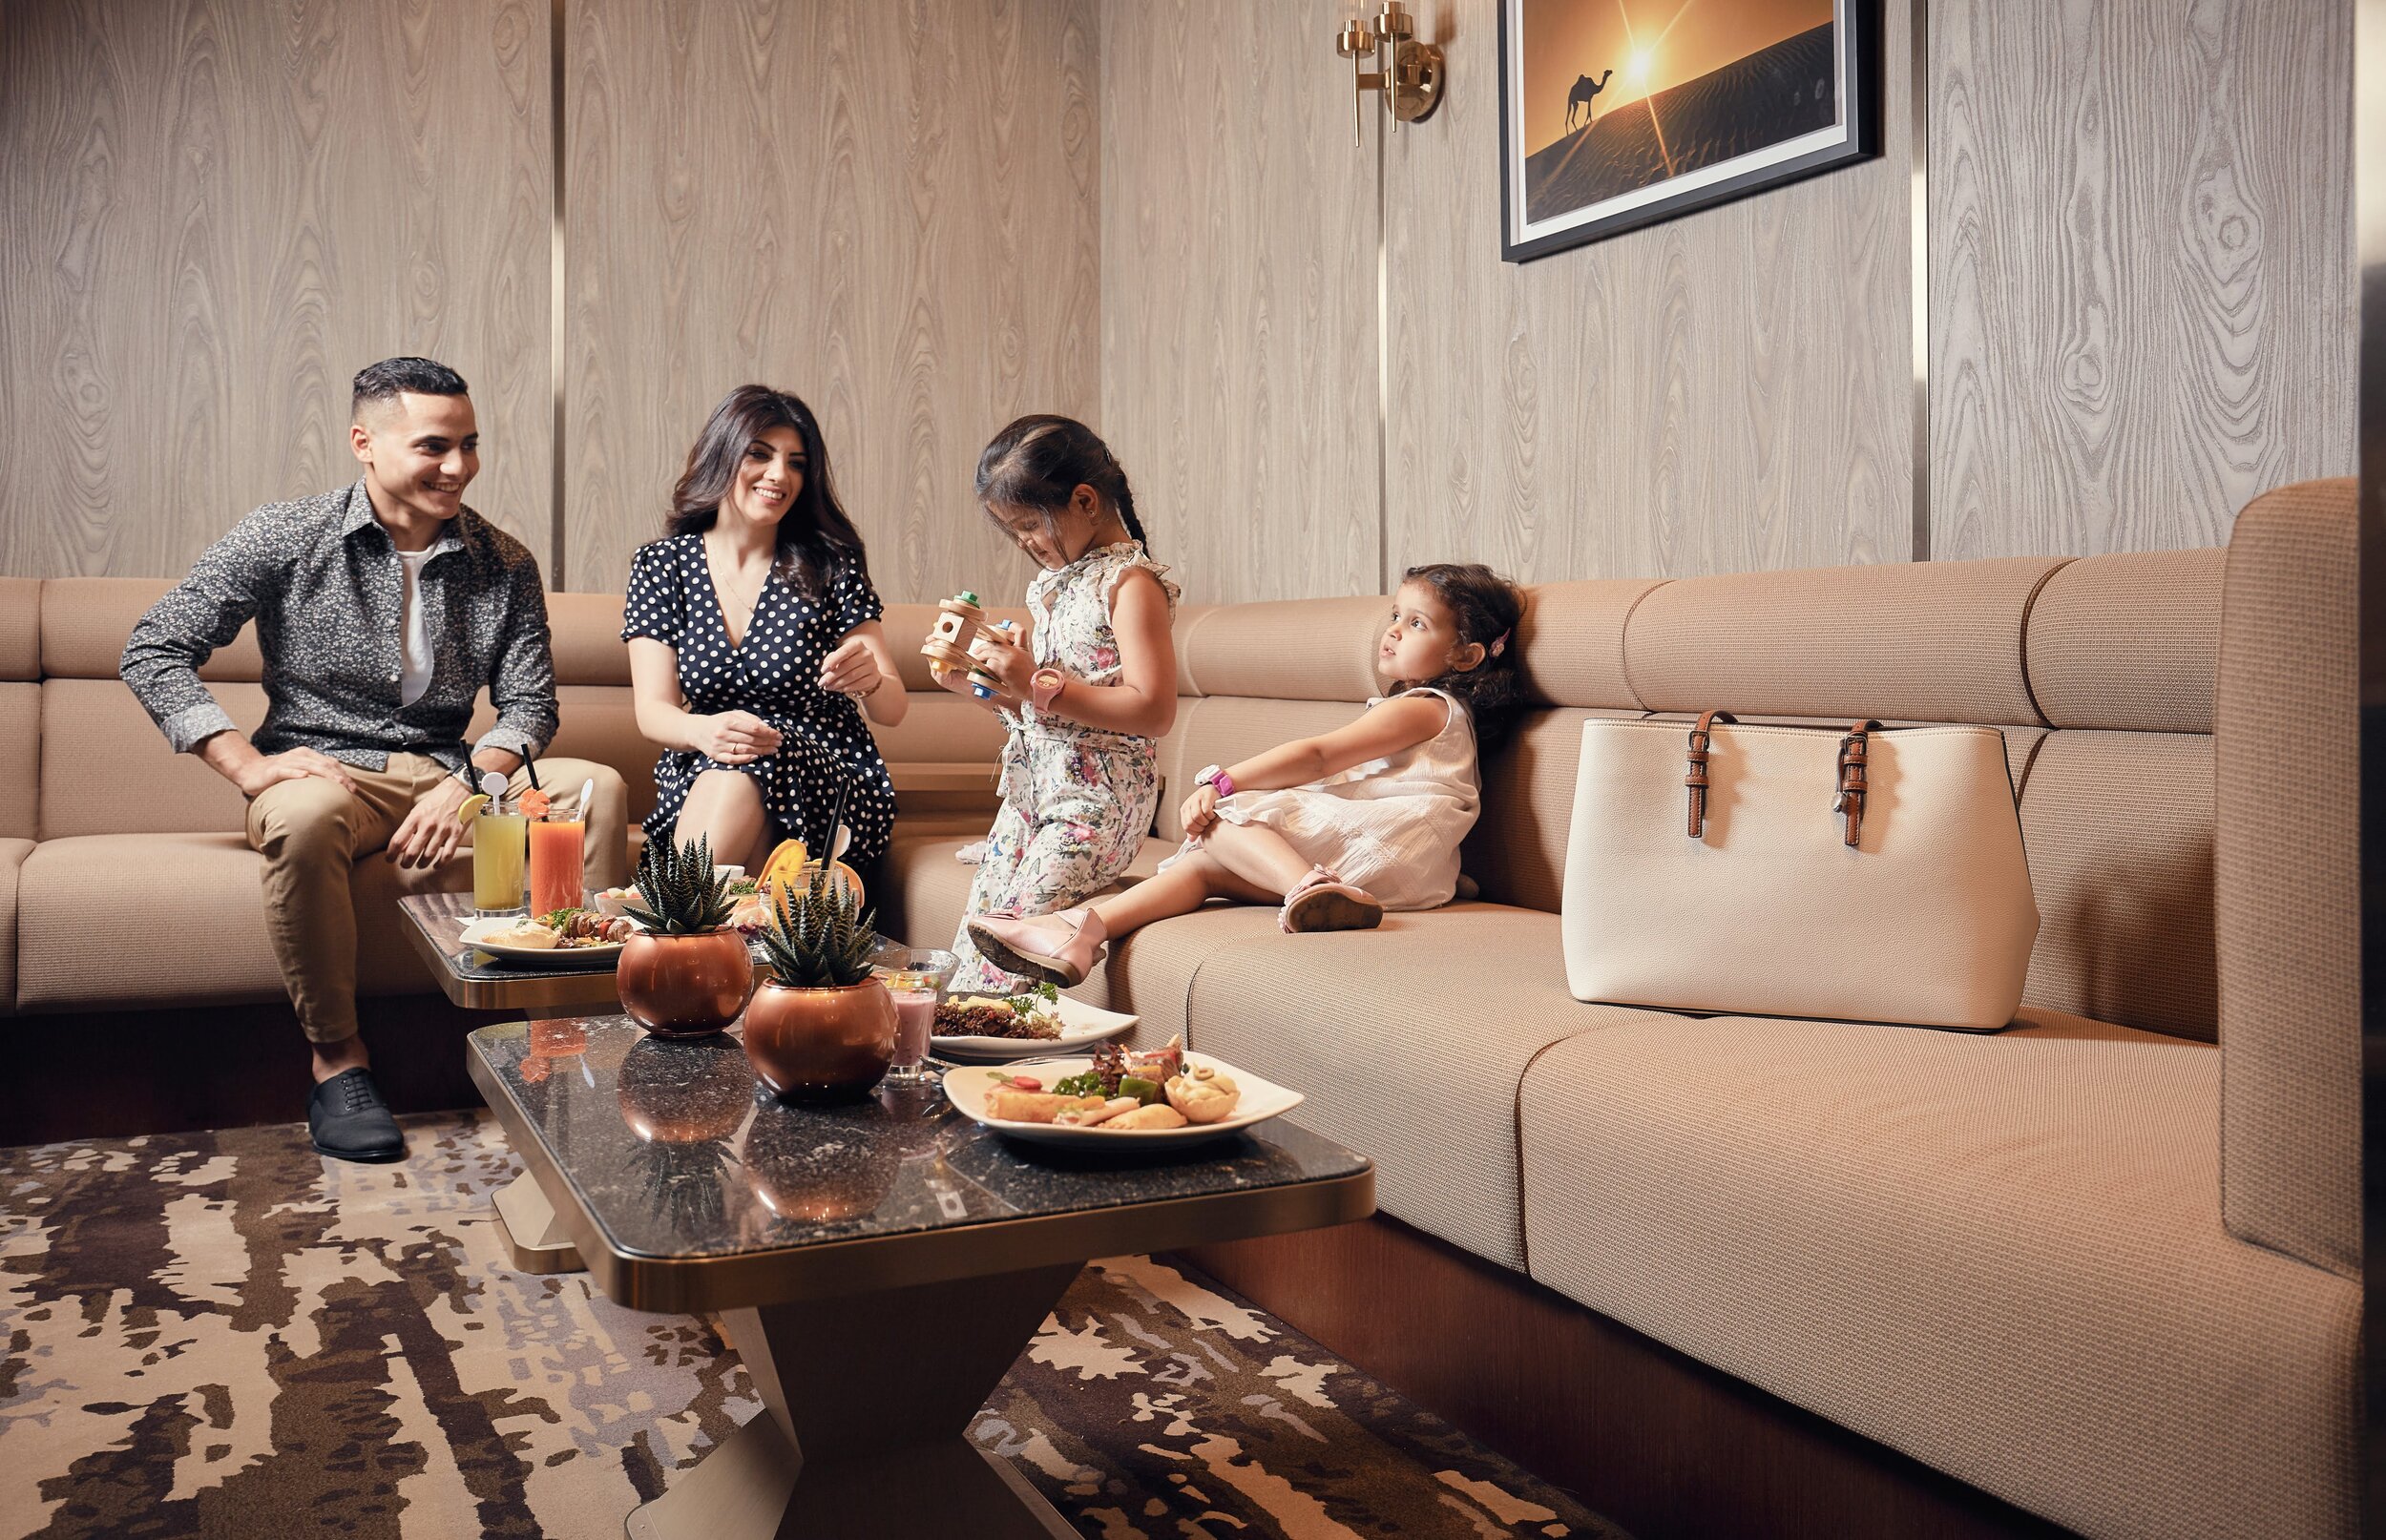 Plaza Premium Lounge Dubai - Family Suite - guest shot.jpg